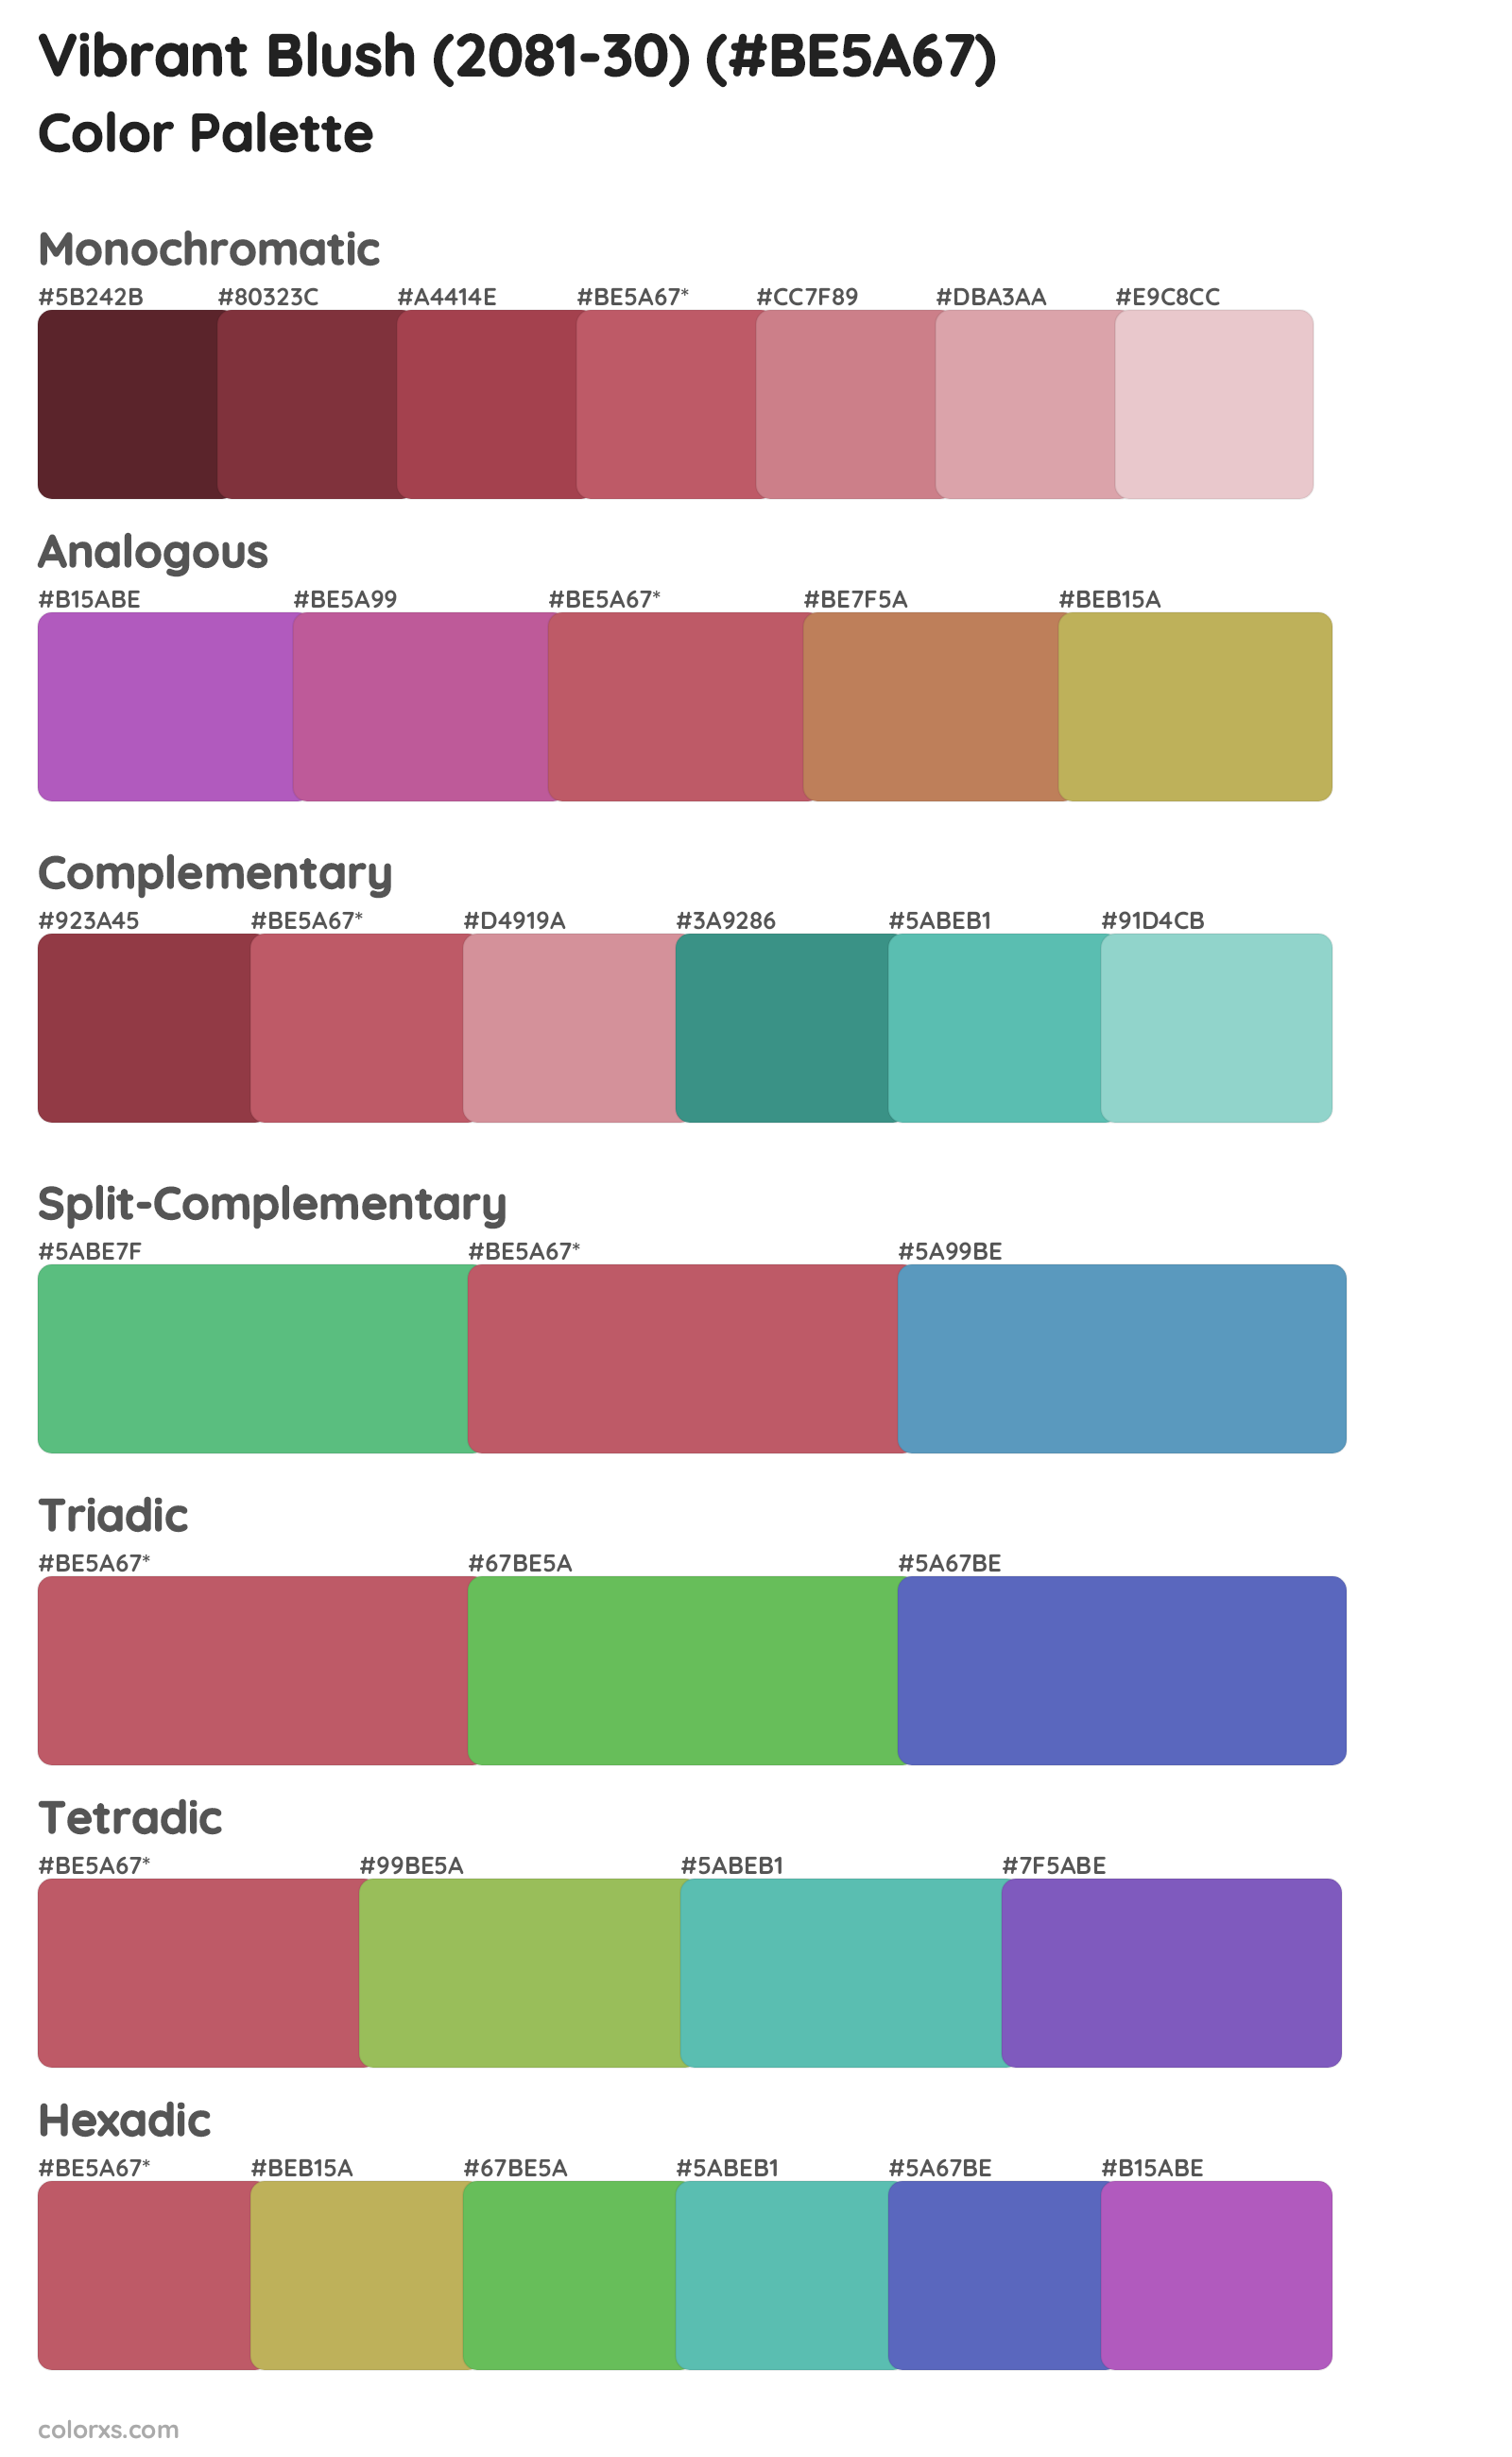 Vibrant Blush (2081-30) Color Scheme Palettes